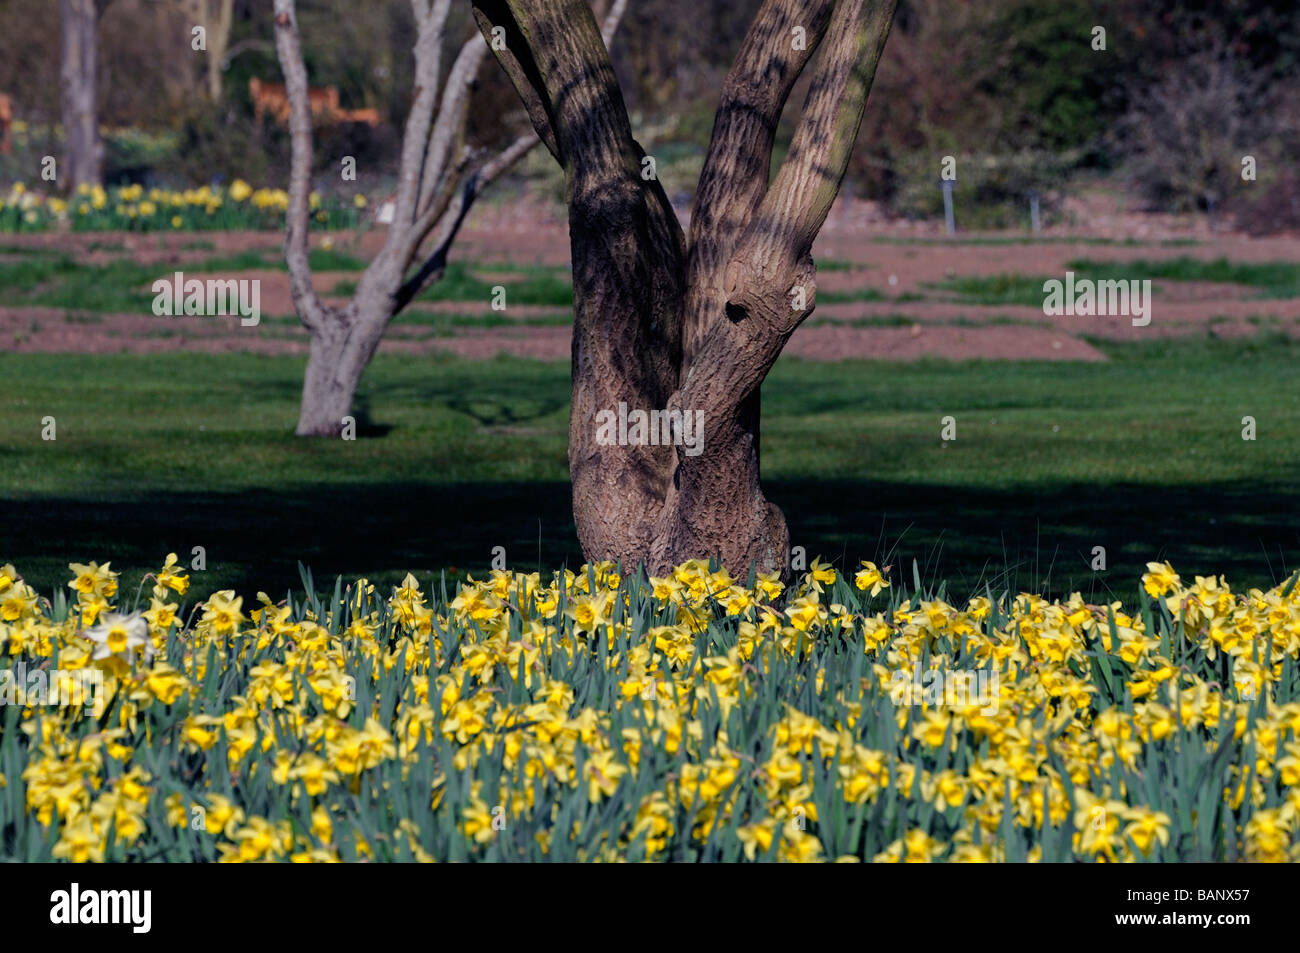 En bas de la base de tronc d'arbre entouré de jonquilles jaune Phoenix park Dublin Irlande spring Banque D'Images